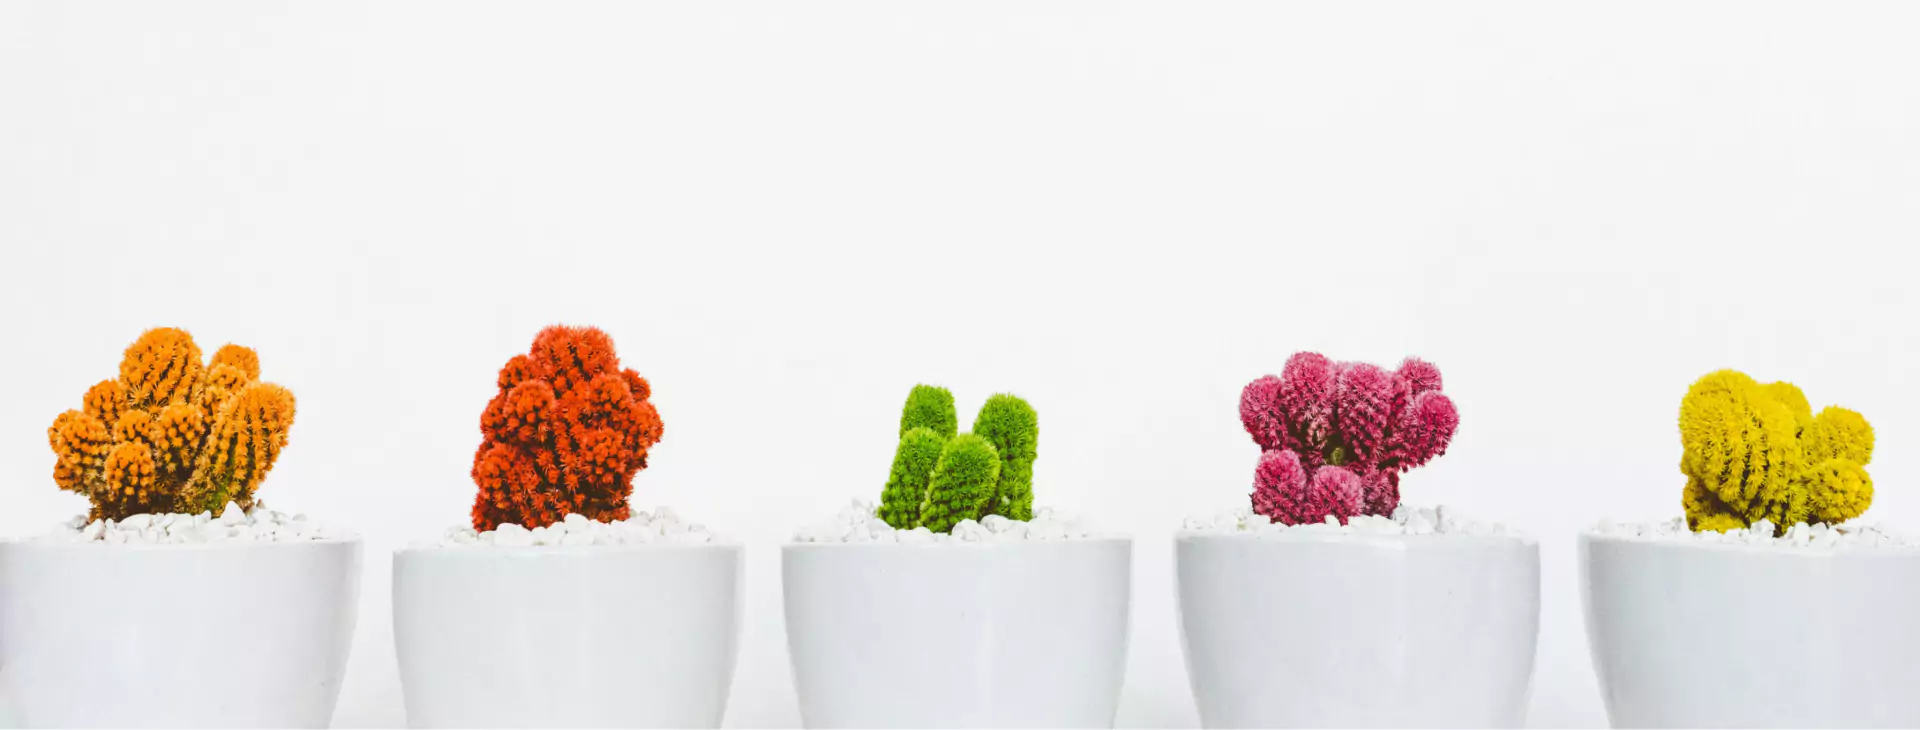 színes kaktuszok